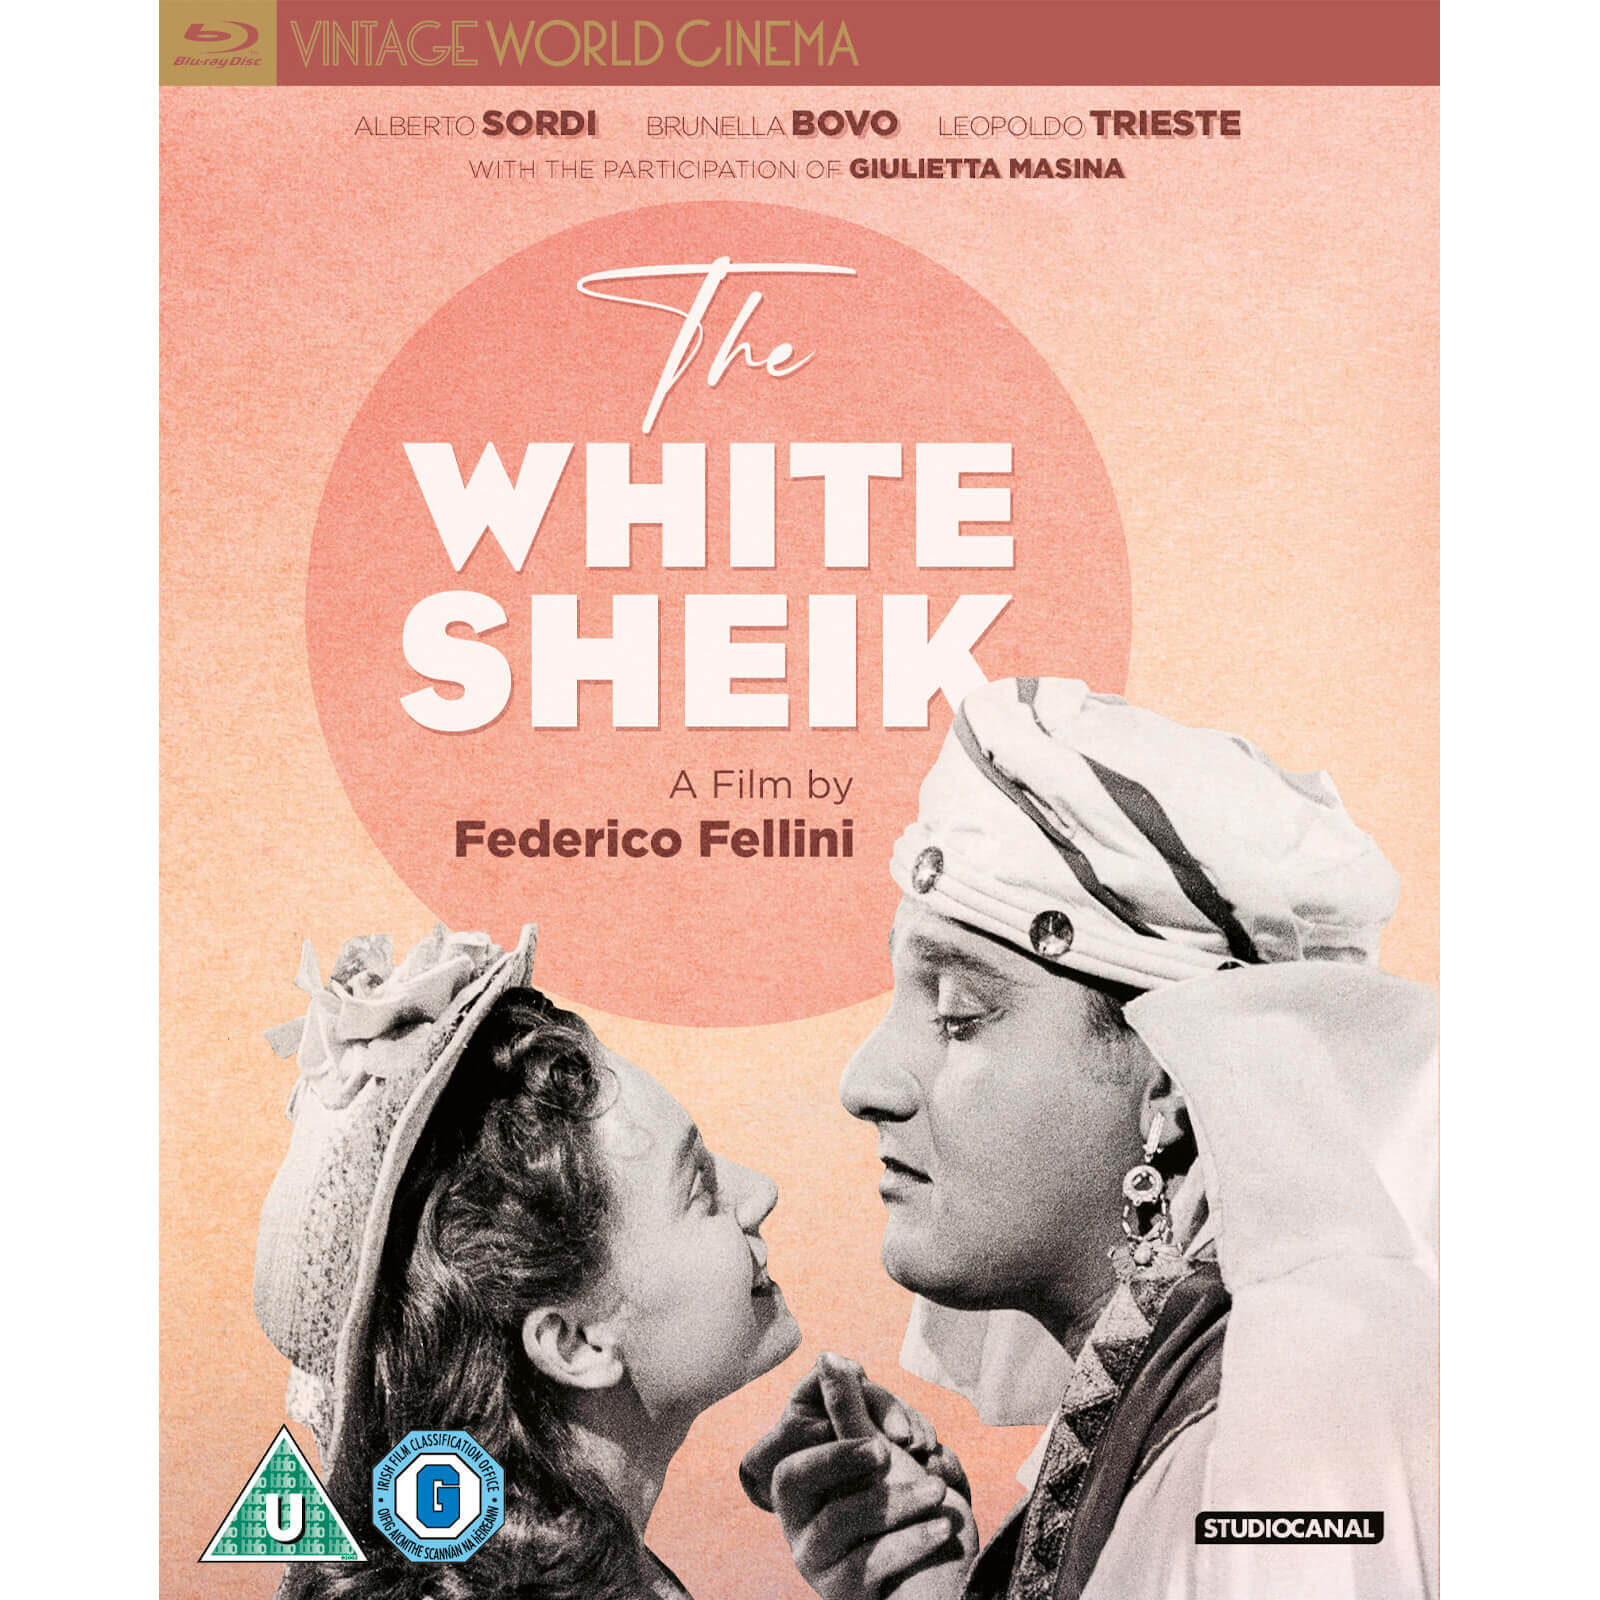 Der weiße Scheich von Vintage World Cinema